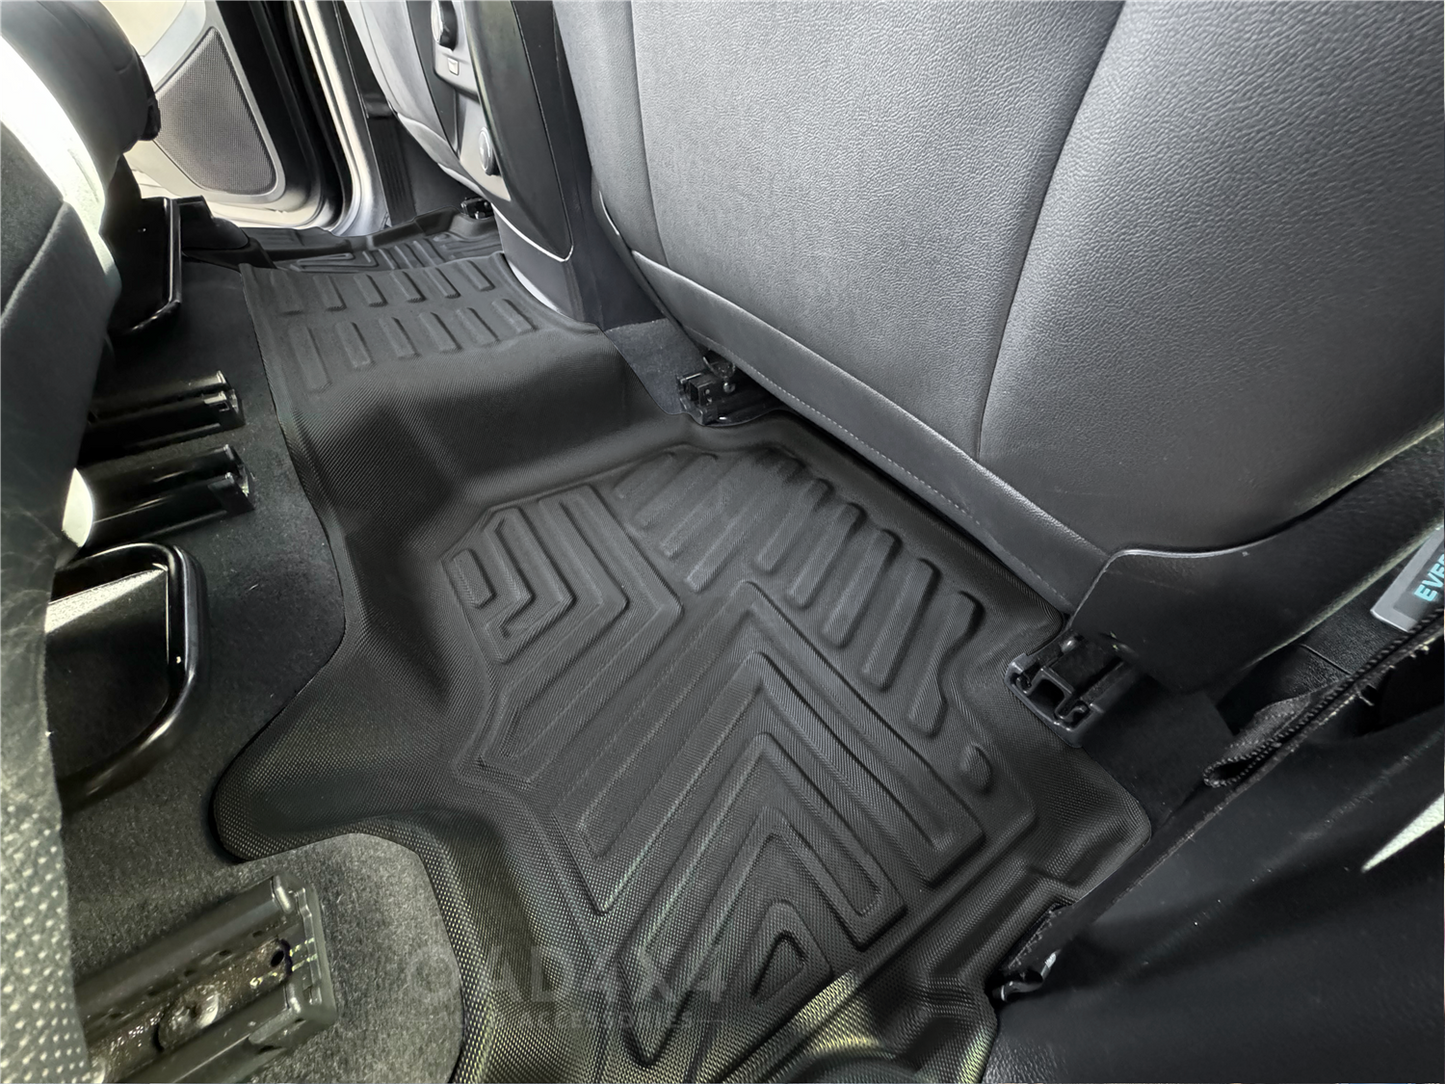 5D TPE Floor Mats for Ford Everest UA / UA II 2015-2022 Tailored Door Sill Covered Floor Mat Liner Car Mats